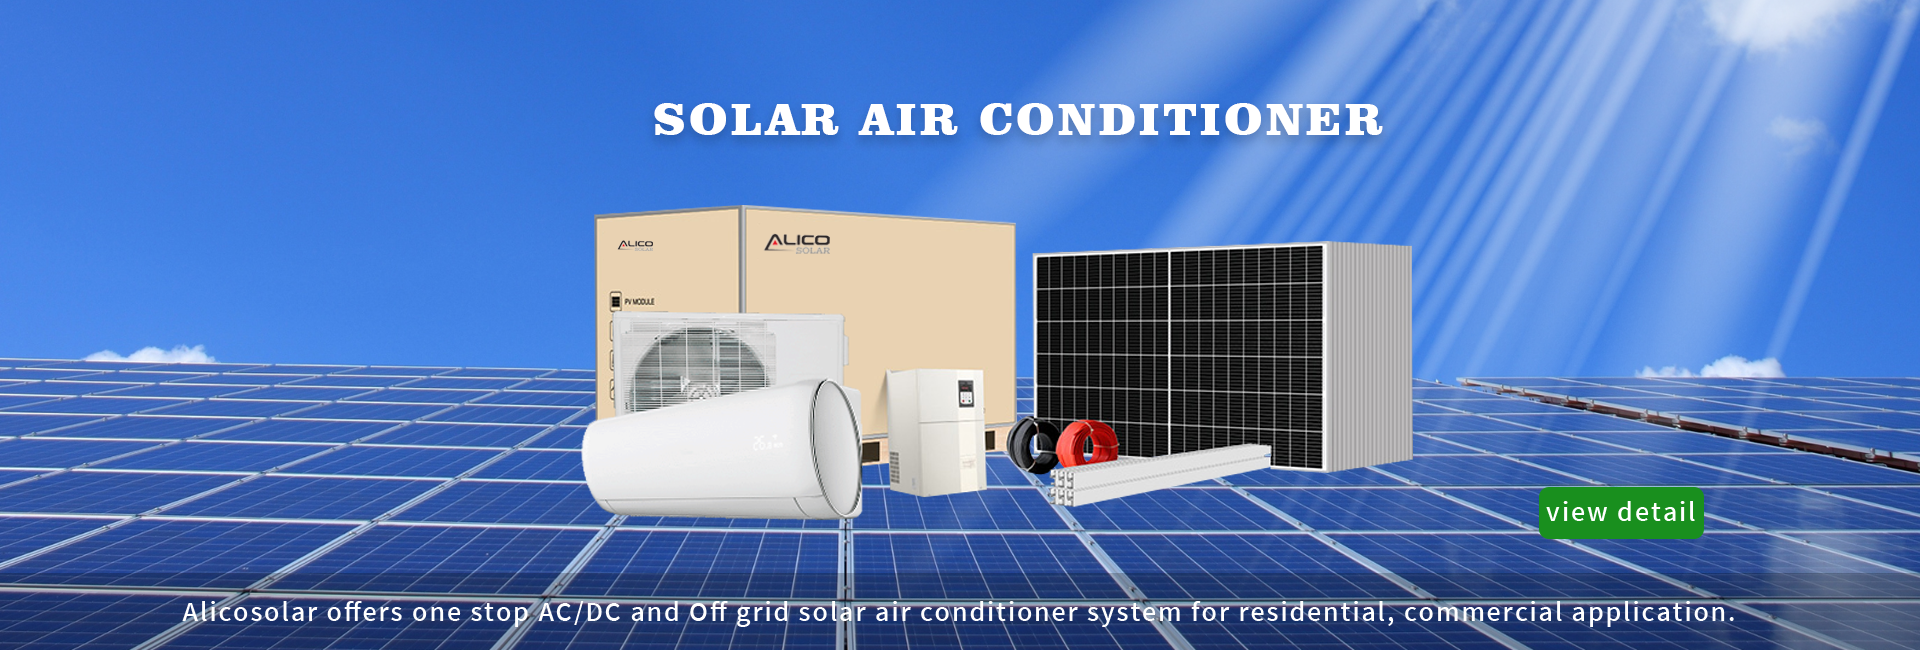 I-Solar Air Conditioner